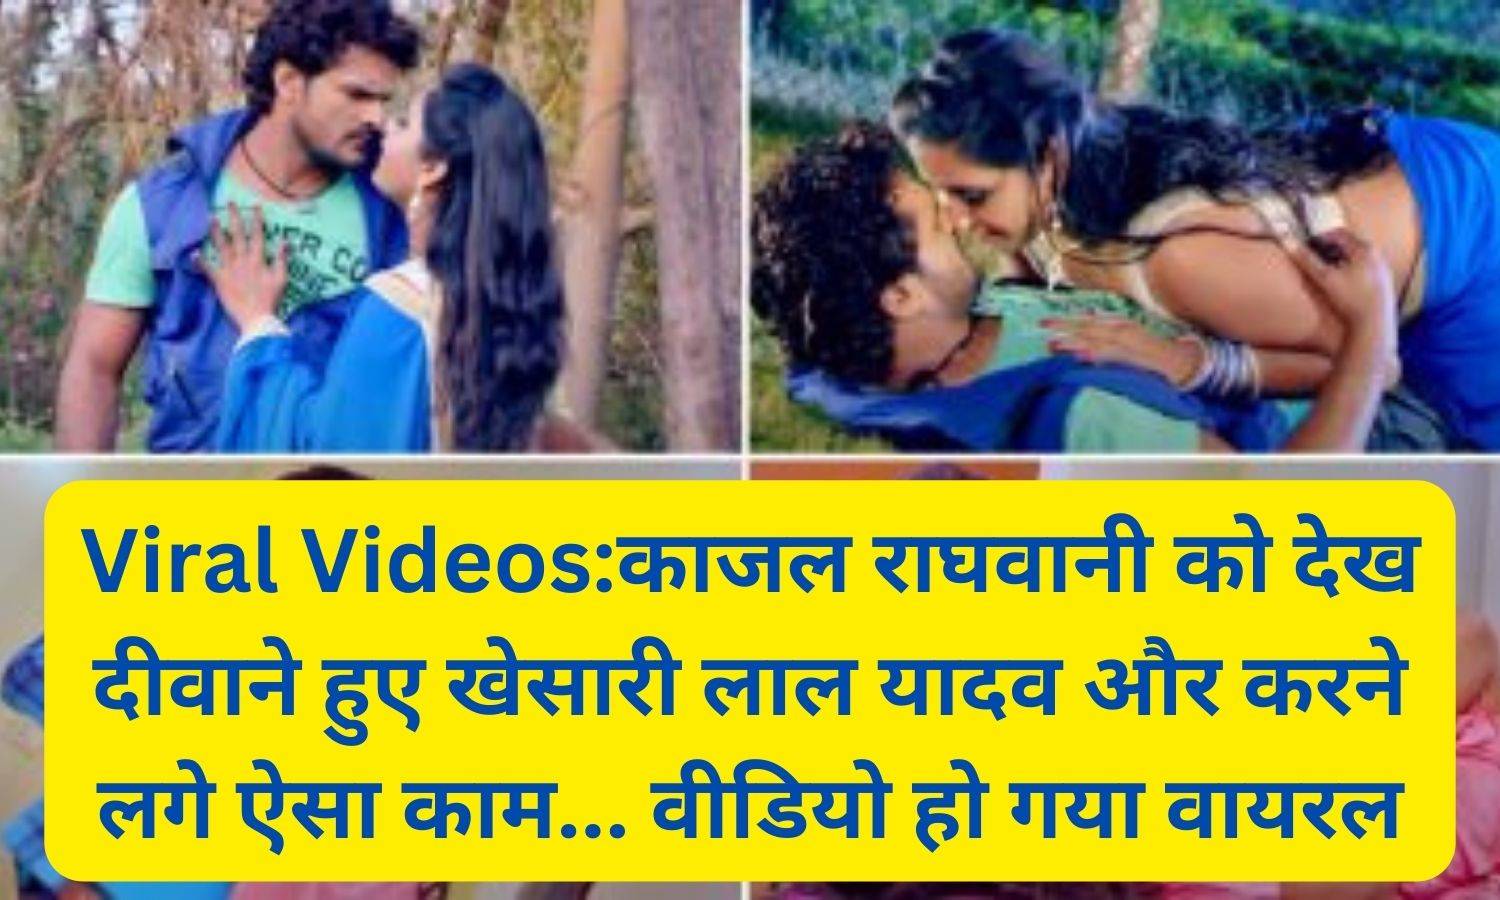 Viral Videos1:काजल राघवानी को देख दीवाने हुए खेसारी लाल यादव और करने लगे ऐसा काम... वीडियो हो गया वायरल